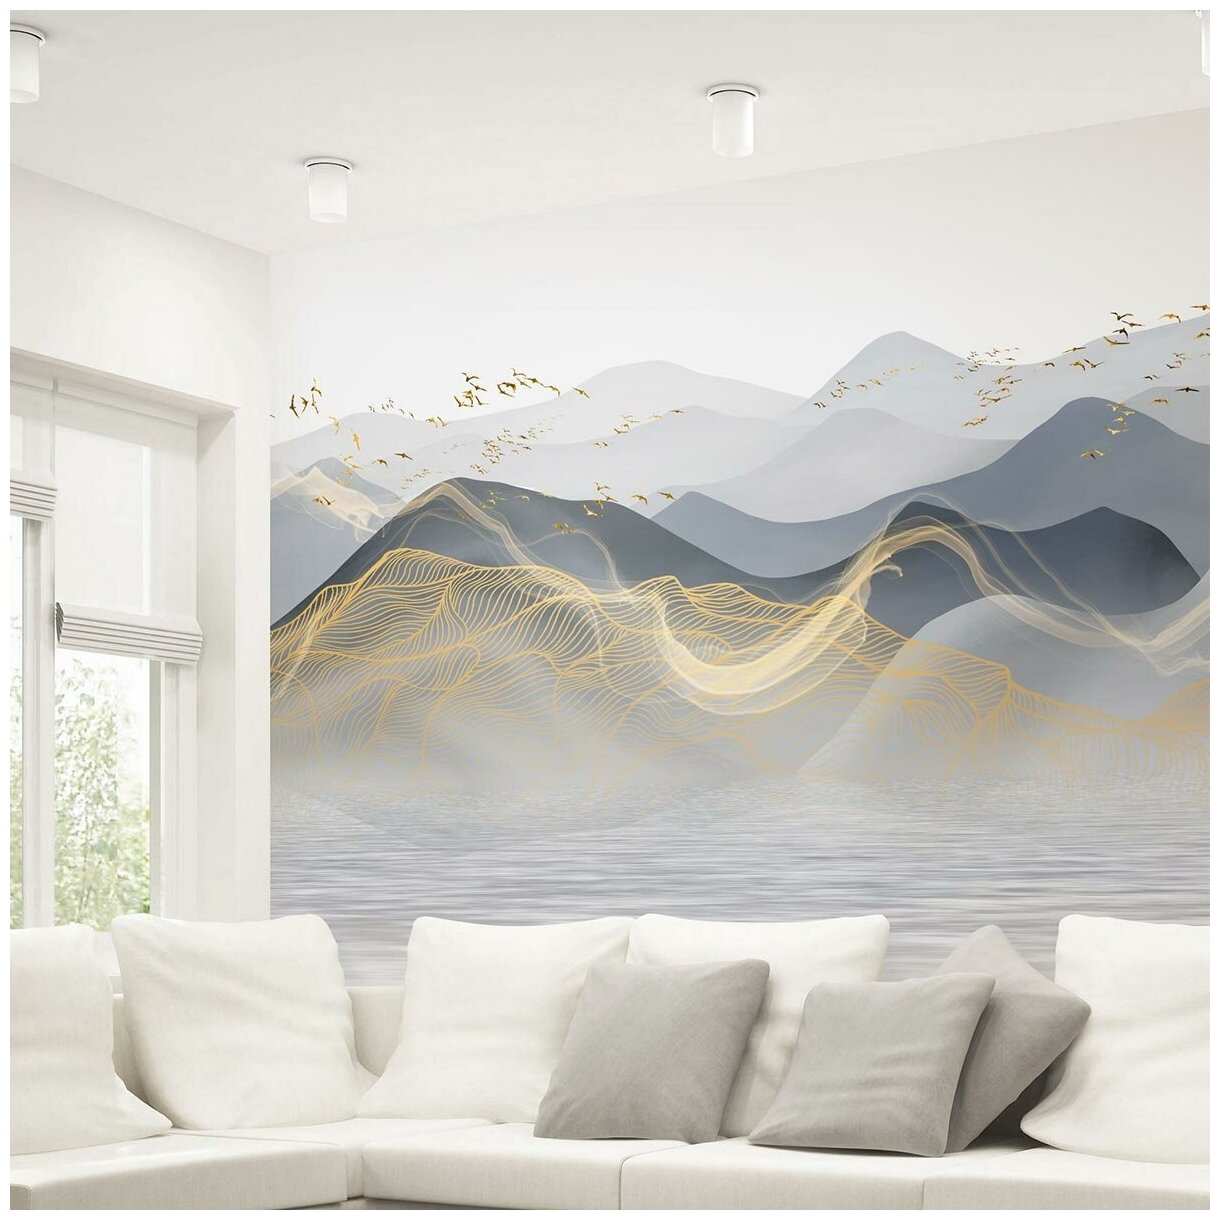 Фотообои флизелиновые с виниловым покрытием VEROL "Горы", 300х283 см, моющиеся обои на стену, декор для дома